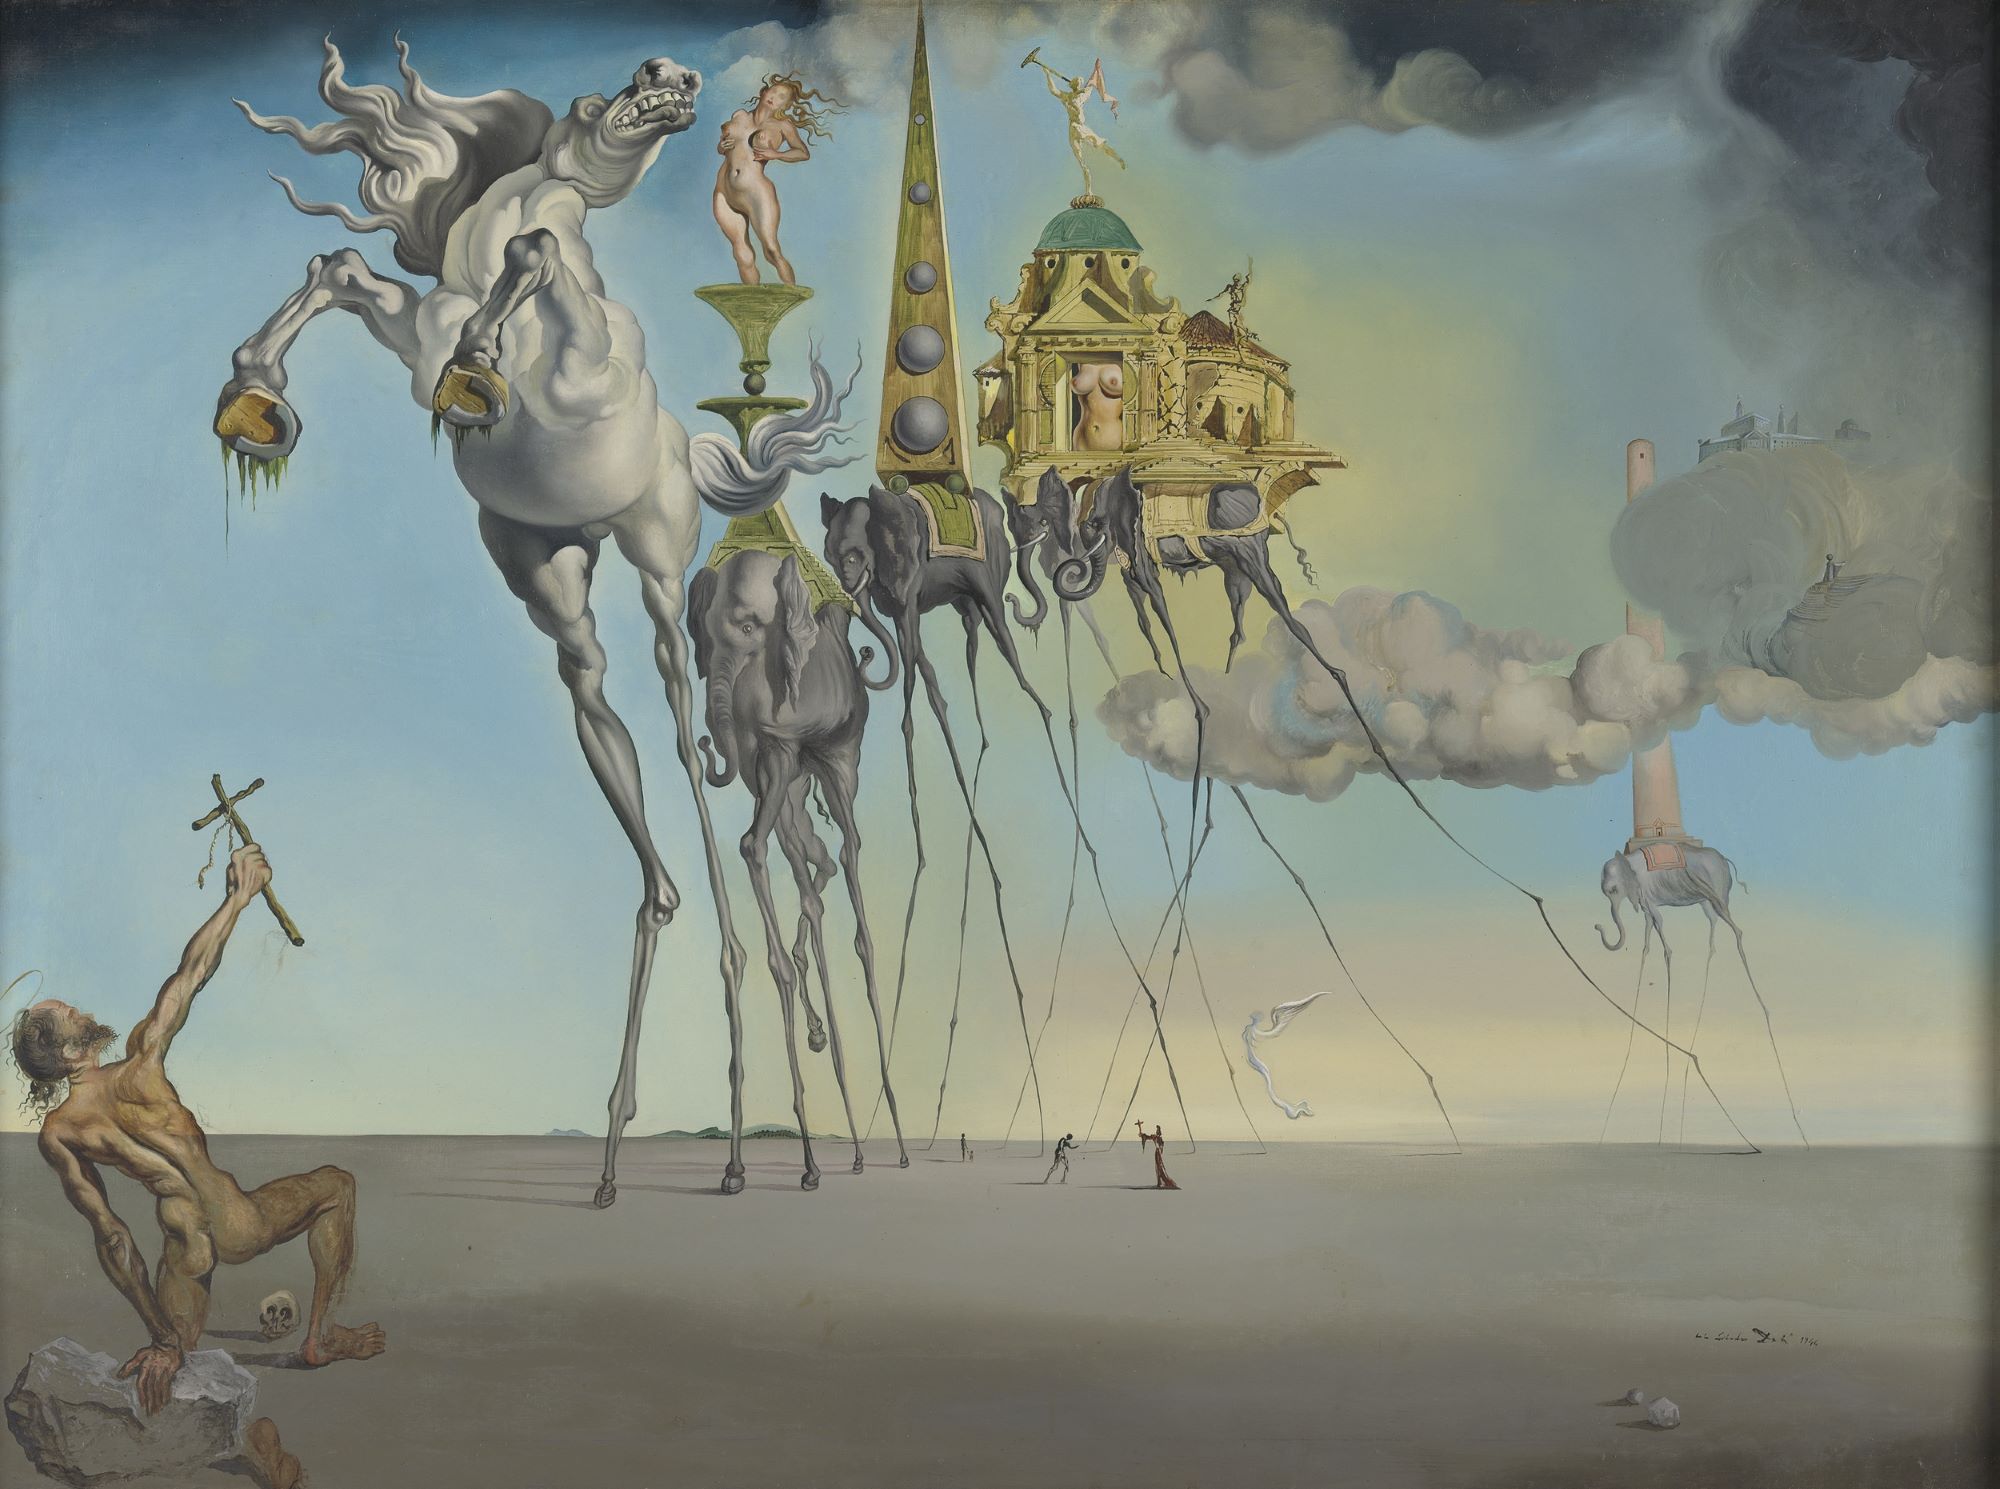 Salvador Dalí (1904-1989), La Tentation de saint Antoine, 1946. Huile sur toile, 89,5 x 119,5 cm. Bruxelles, musées royaux des Beaux-Arts de Belgique. Photo service de presse. © Fundació Gala-Salvador Dali Adagp © Musées royaux des Beaux-Arts de Belgique / Joan Geley